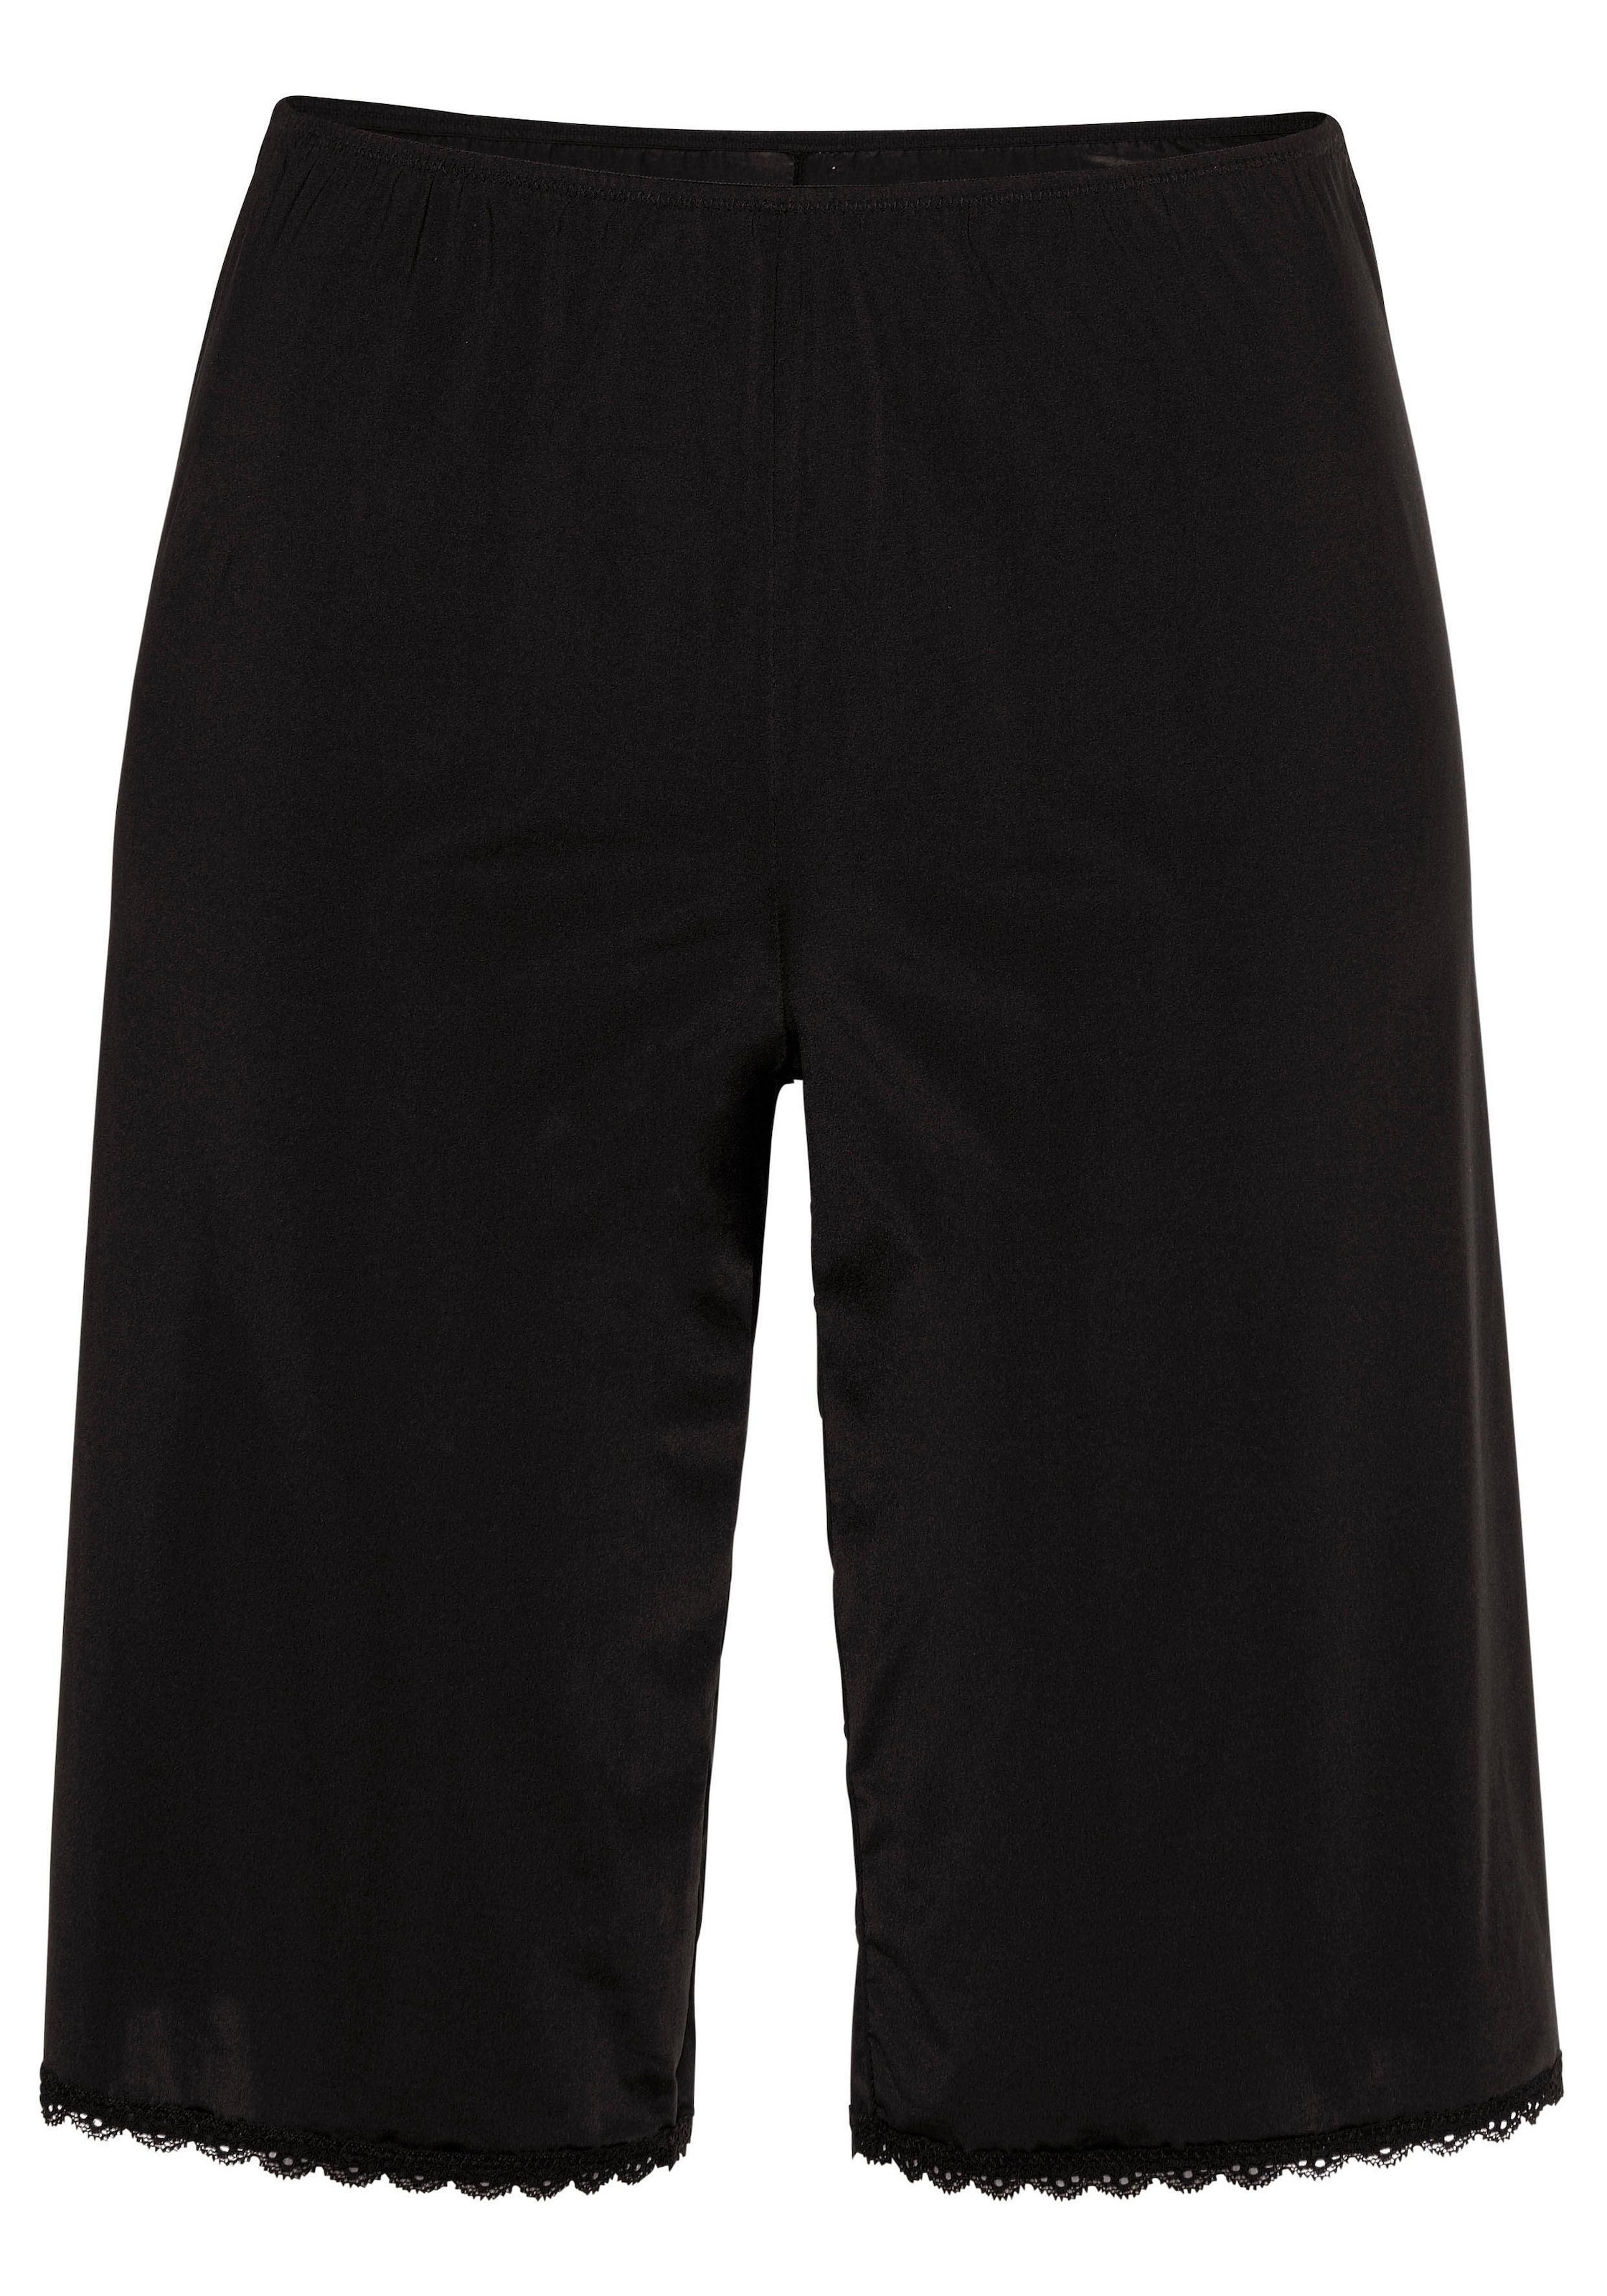 Nuance Unterrock, für kurze Röcke, Basic Dessous » LASCANA | Bademode,  Unterwäsche & Lingerie online kaufen